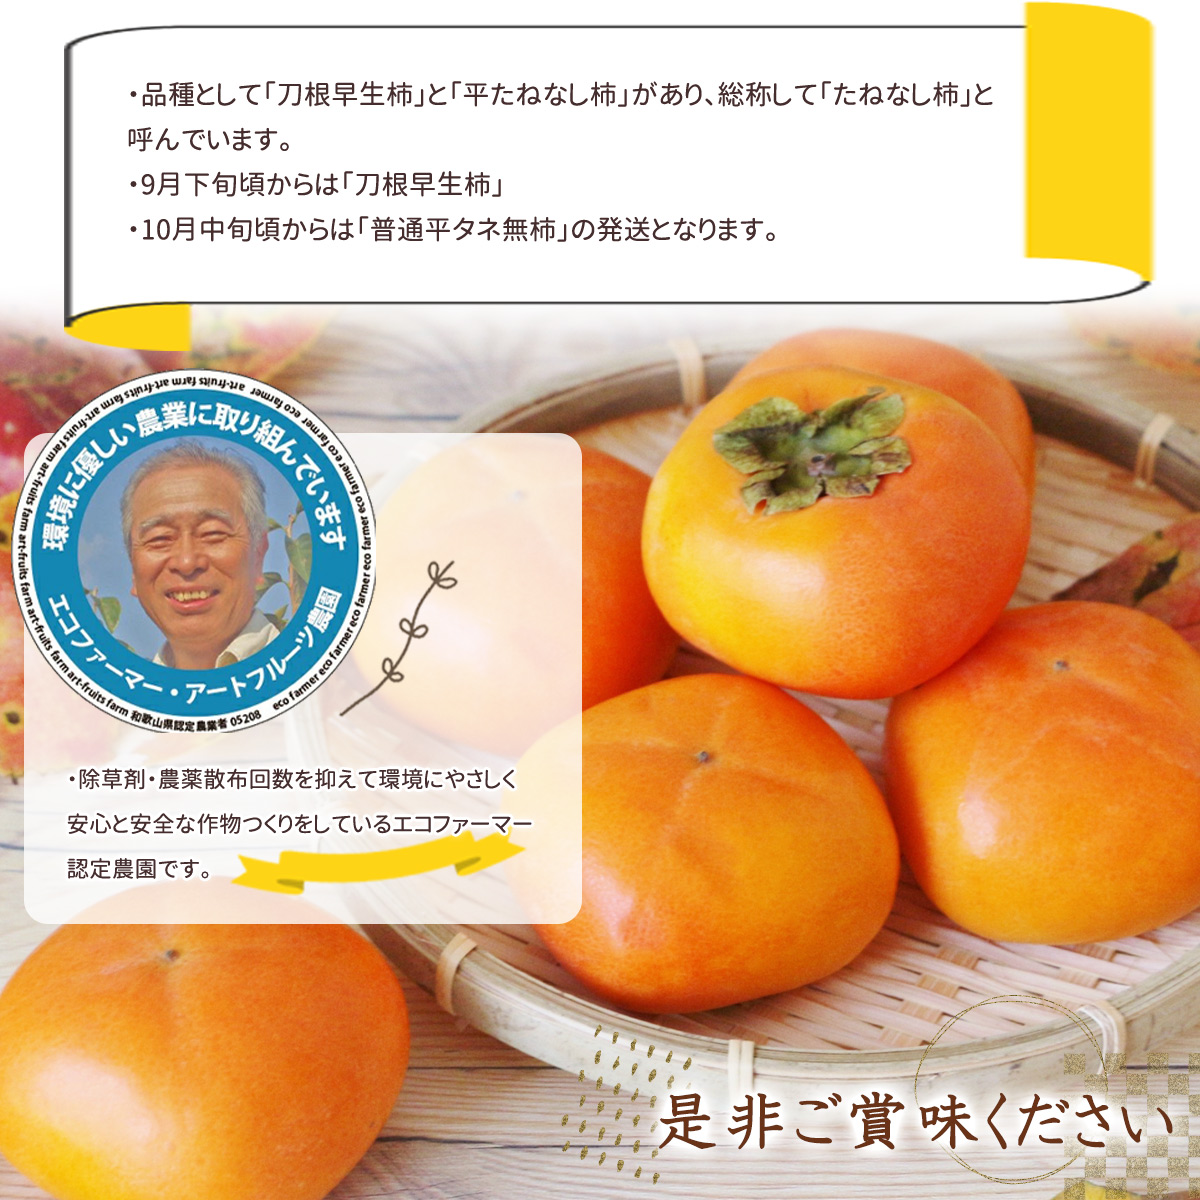 EB6014_【和歌山県産】採れたて 種なし柿 3Lサイズ 28個詰 7.5kg箱